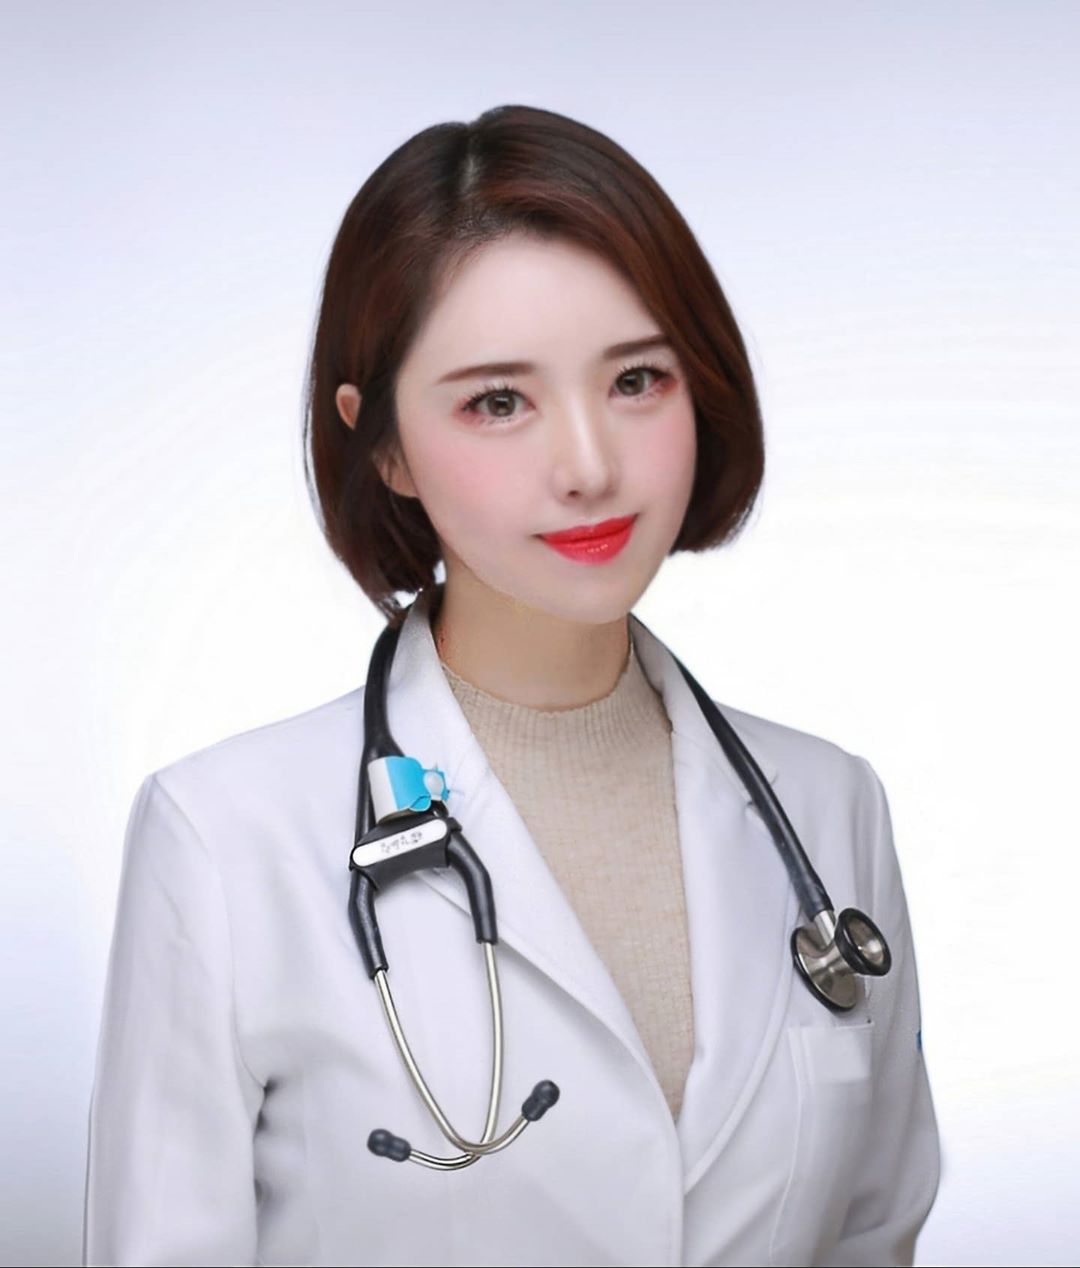 Hình ảnh của một nữ bác sĩ Hàn Quốc với vẻ đẹp ngọt ngào, mới mẻ và tươi trẻ sẽ chắc chắn thu hút sự chú ý của bạn. Nhan sắc tuyệt vời của cô ấy sẽ khiến bạn muốn biết thêm về các bí quyết làm đẹp ở Hàn Quốc.